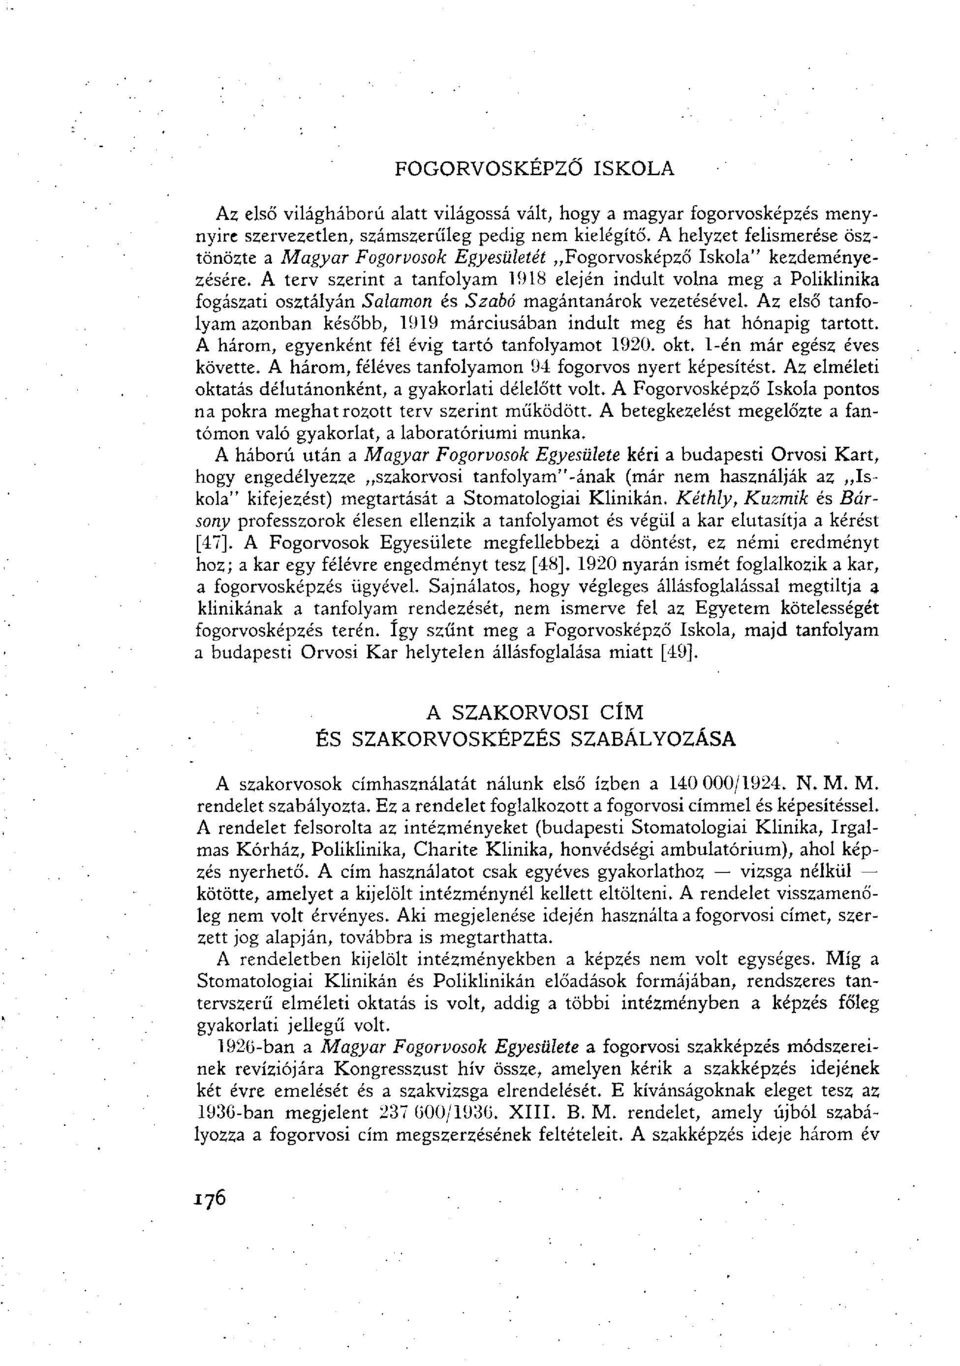 A terv szerint a tanfolyam 1918 elején indult volna meg a Pofiklinika fogászati osztályán Salamon és Szabó magántanárok vezetésével.